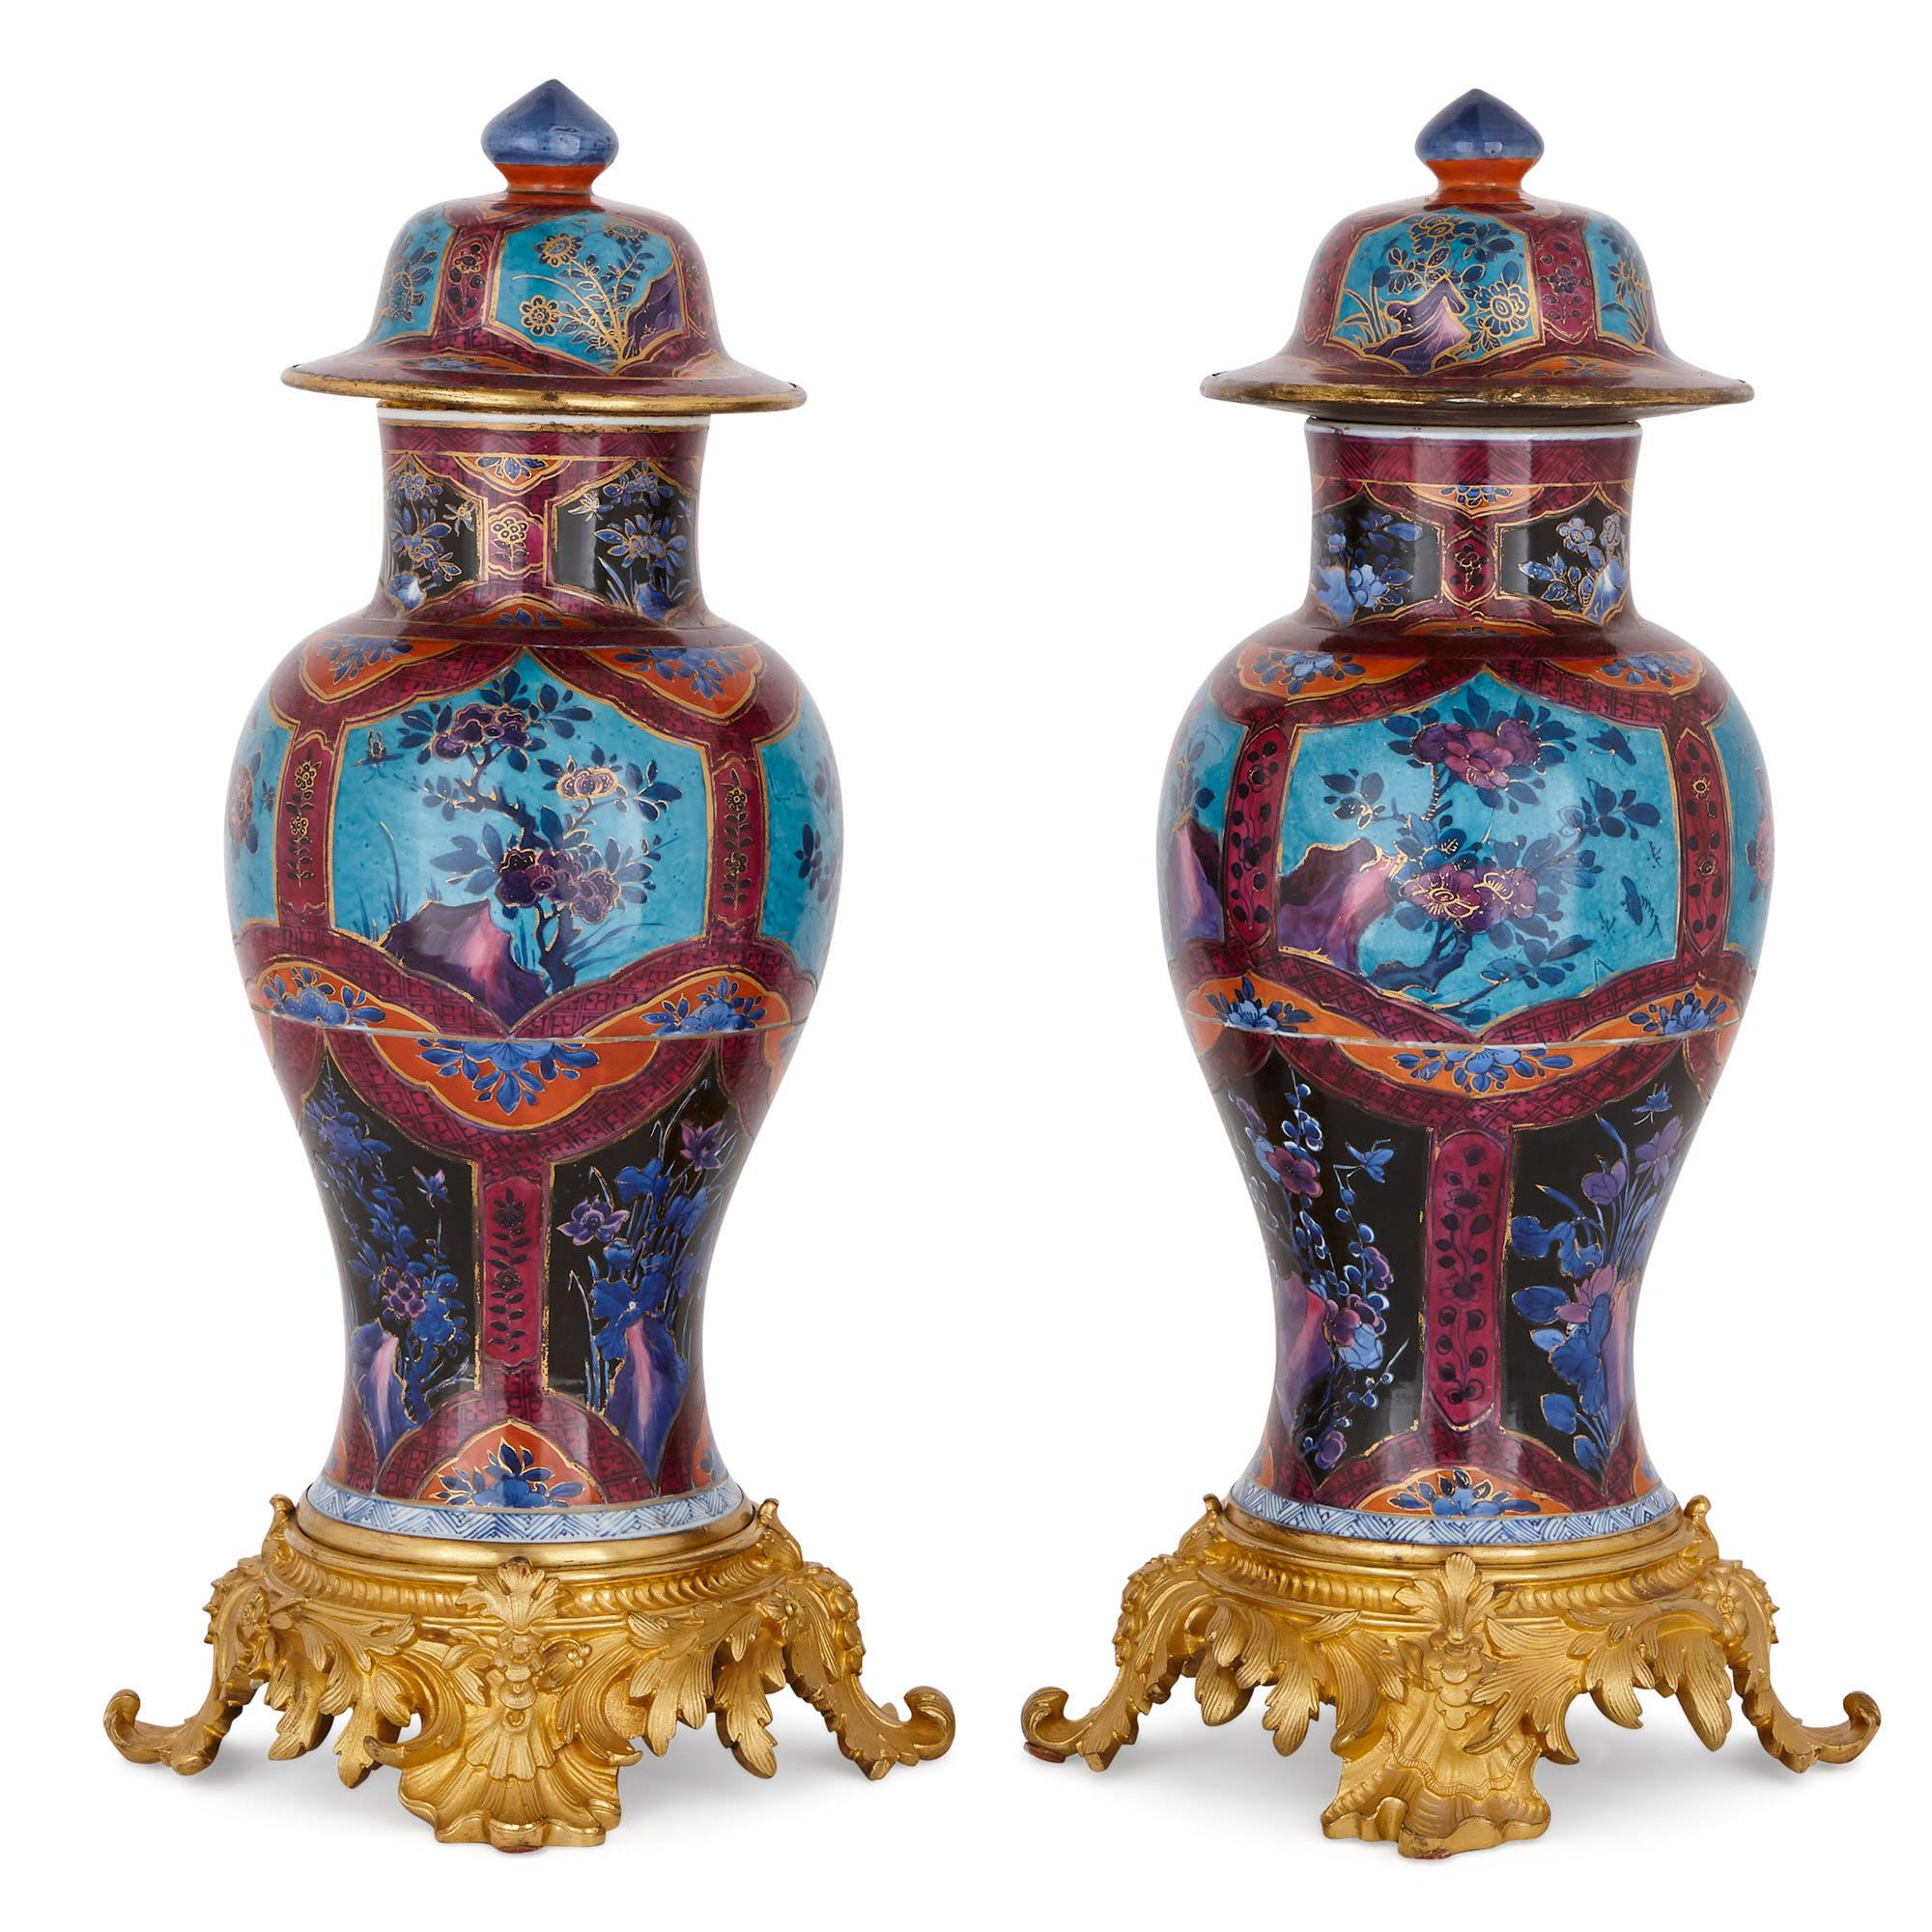 Ces vases en porcelaine sont des pièces exquises de l'art décoratif chinois ancien. Ils ont été fabriqués à la fin de la dynastie Qing, qui a duré de 1644 à 1911. Cette période en Chine est largement célébrée pour la production de magnifiques objets